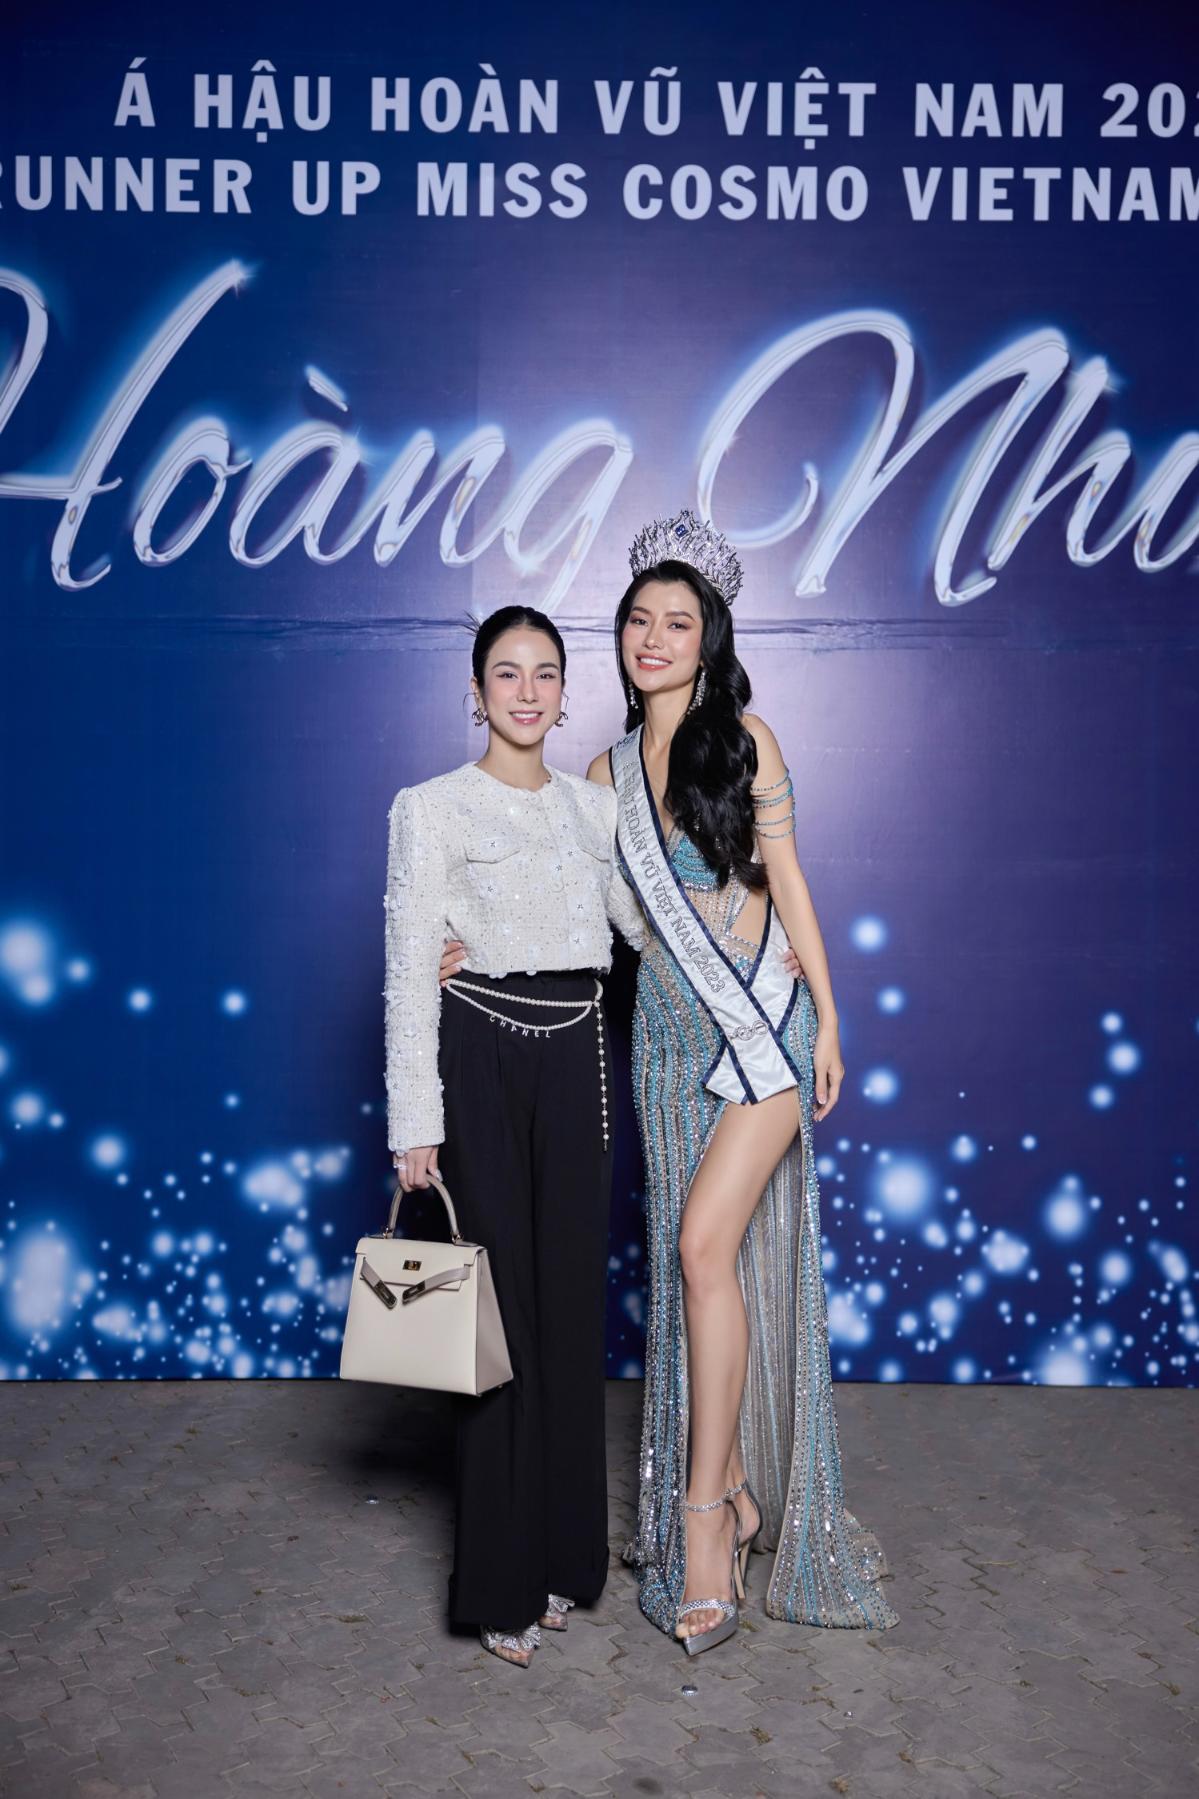 Miss Cosmo Vietnam – Hoa hậu Hoàn vũ Việt Nam 2023 Hoàng Nhung 7 Á hậu Hoàng Nhung hạnh phúc trong tiệc tri ân sau đăng quang   